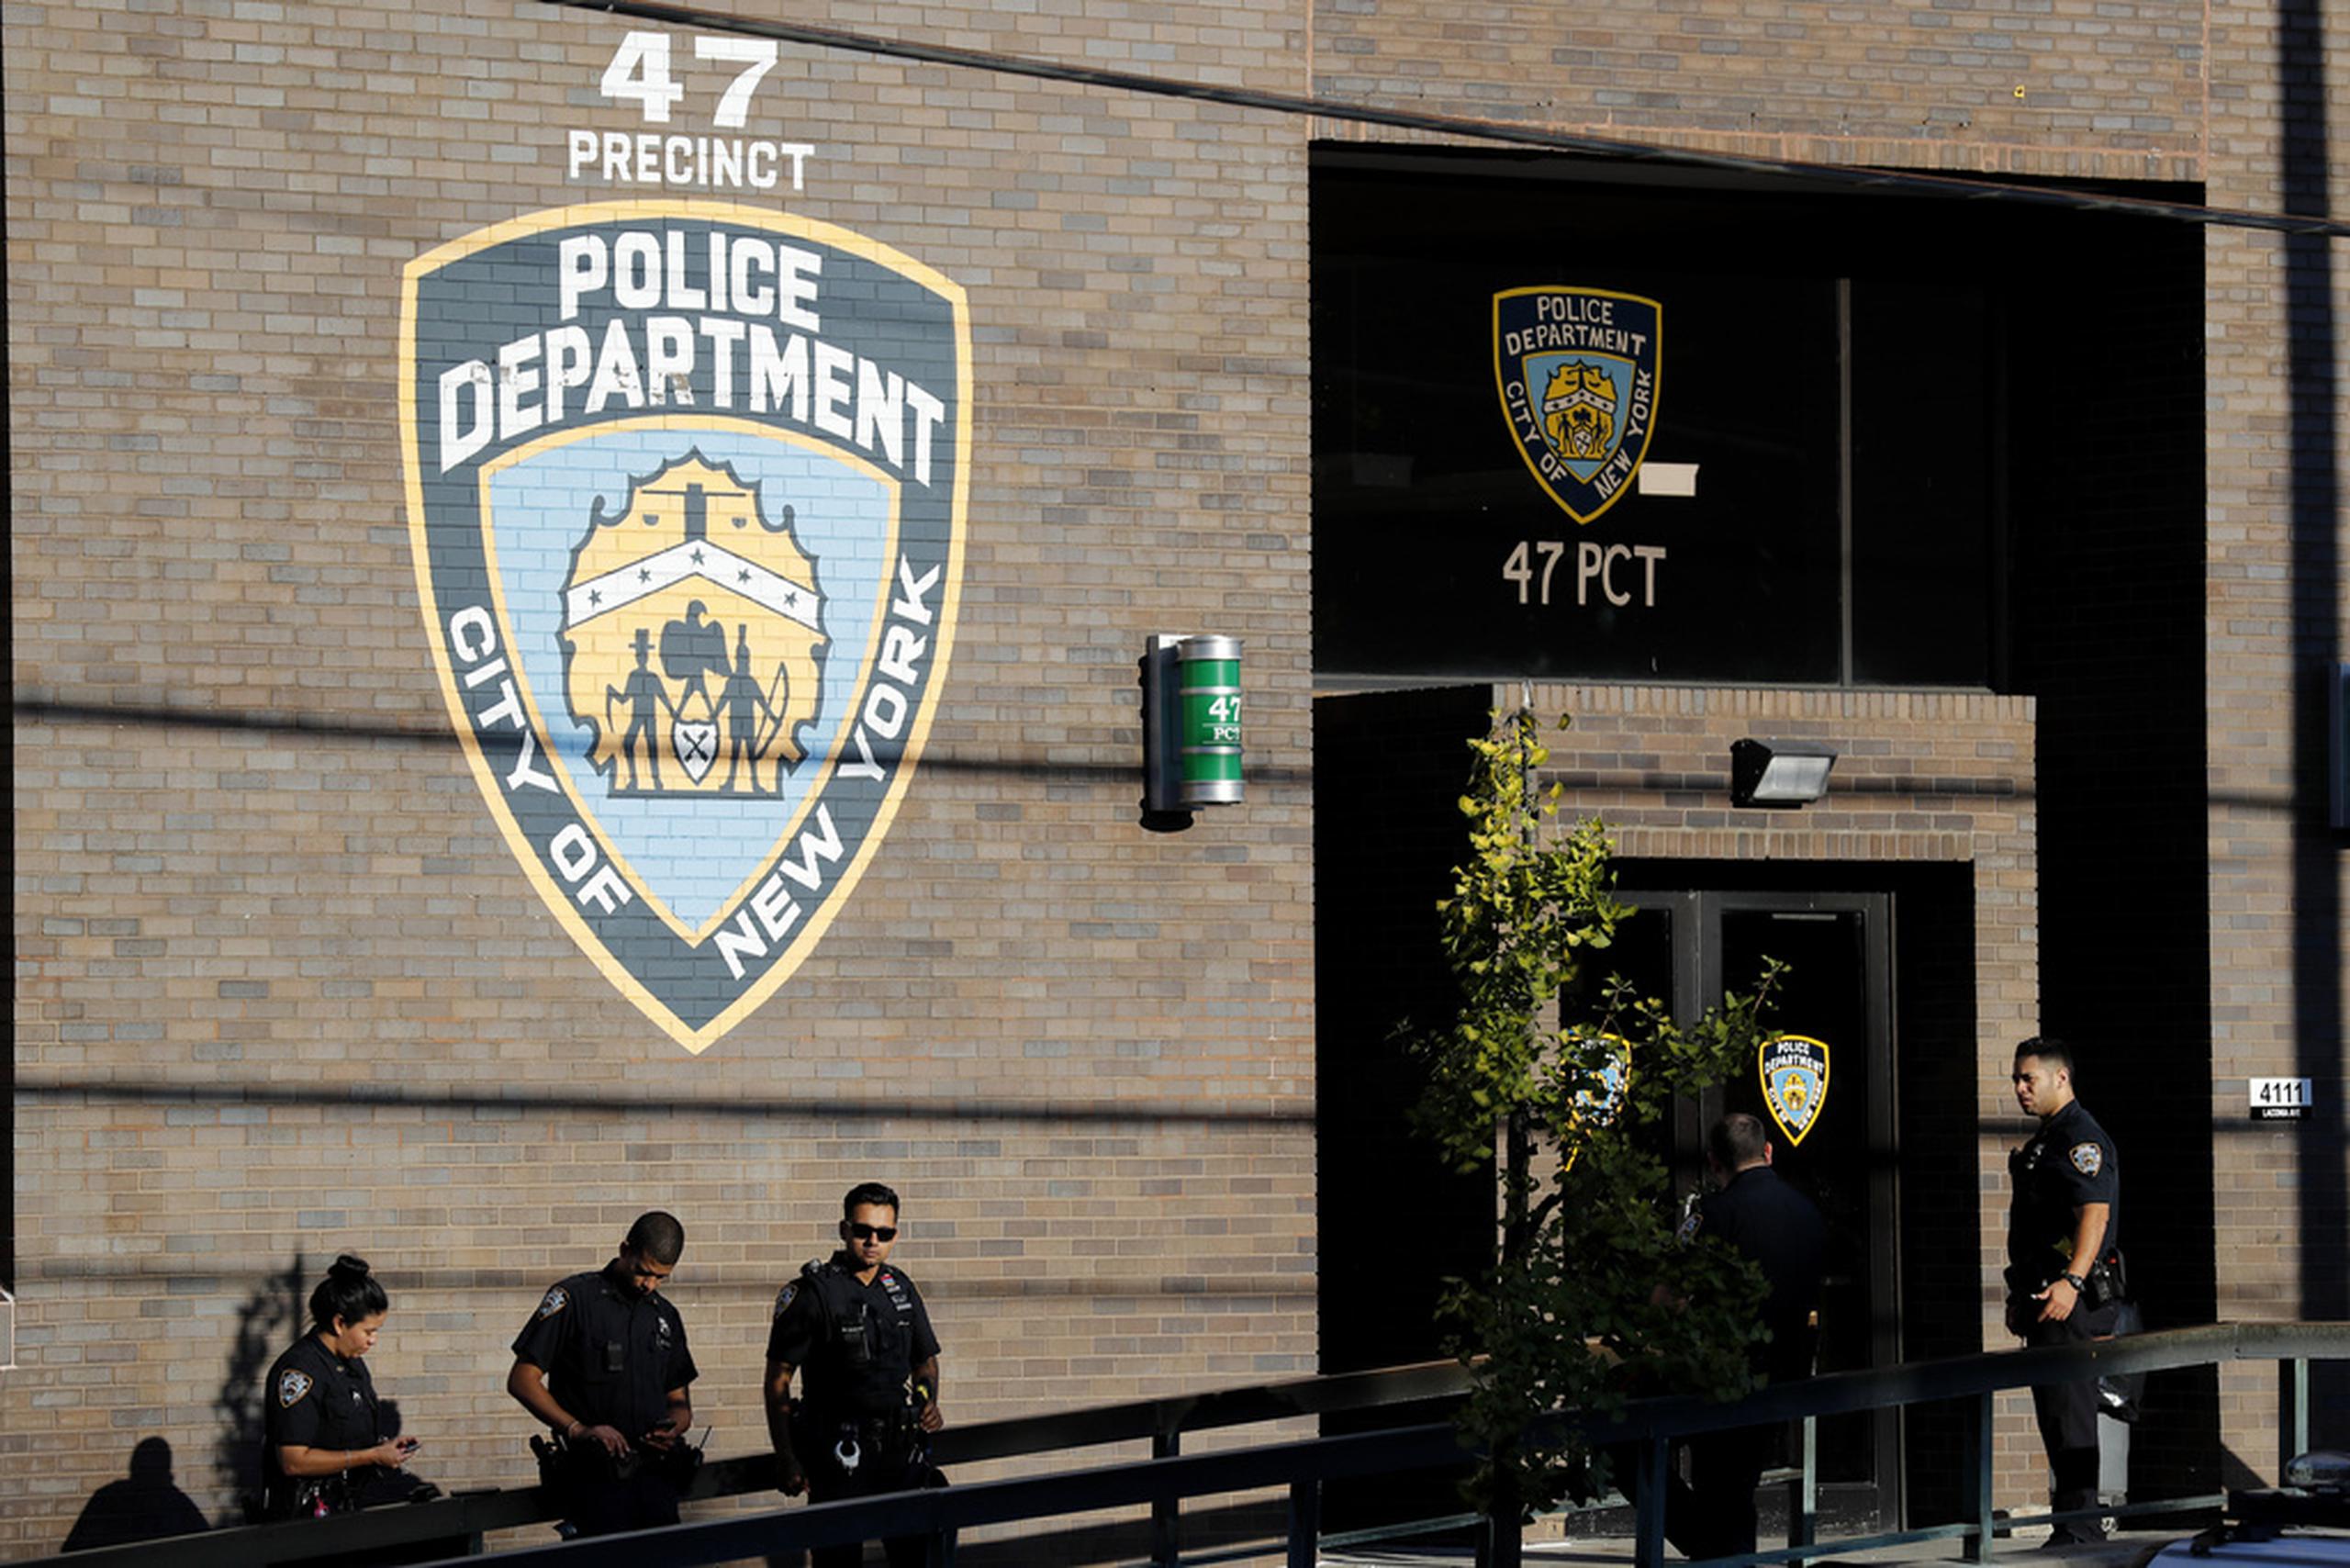 La policía ha confiscado 9,500 patinetes, bicicletas y vehículos todo terreno desde el 1 de enero, incluyendo 2,500 en el Bronx, indicó el subcomisionado de la policía Kaz Daughtry.